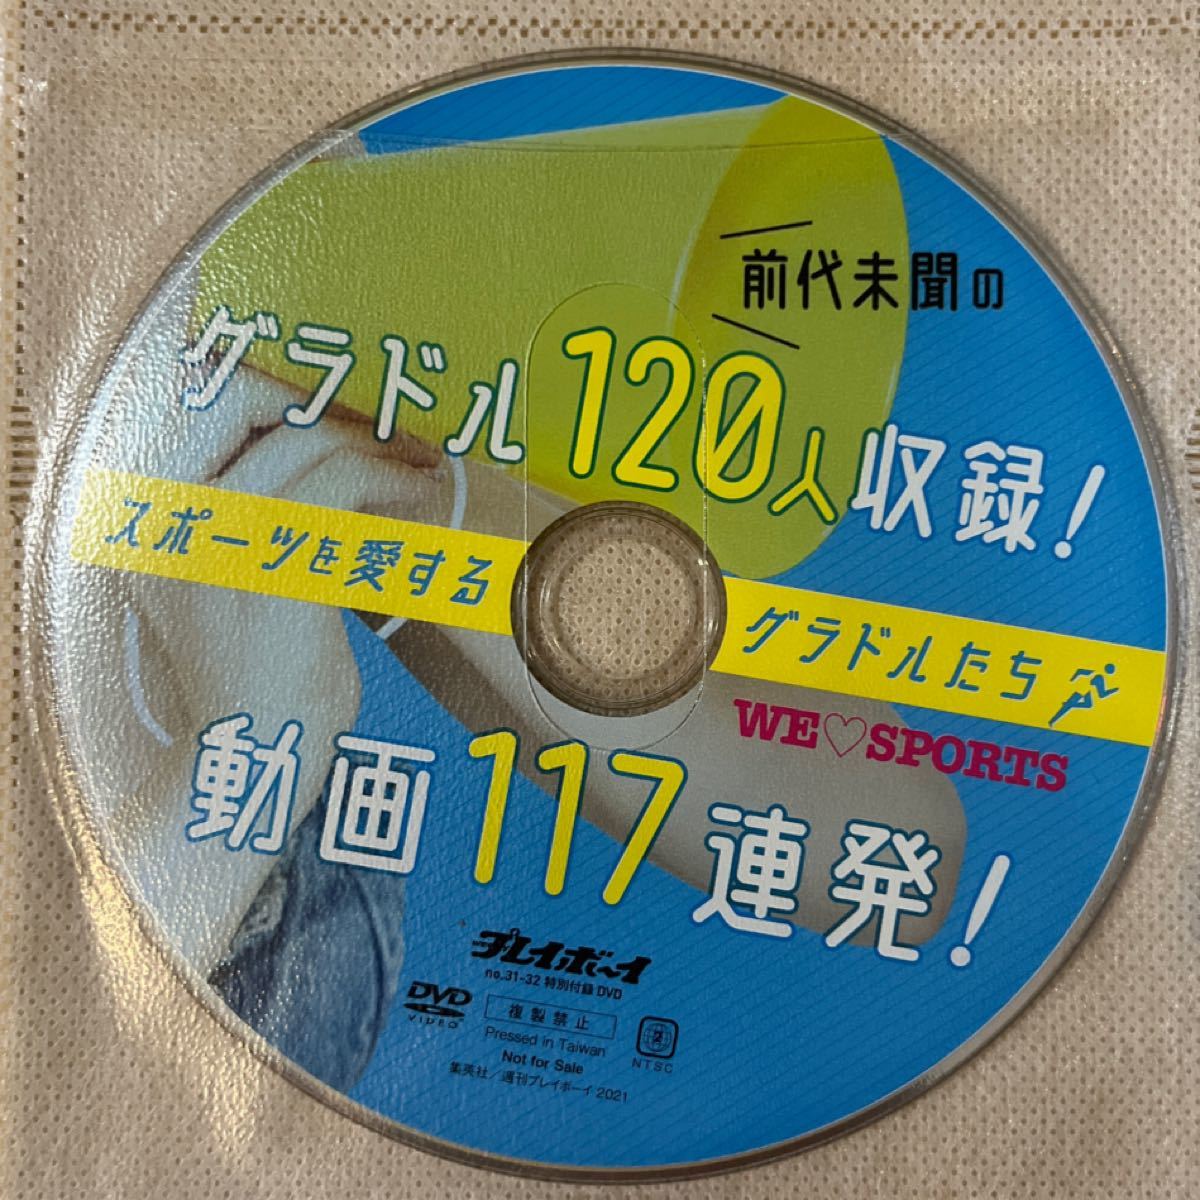 プレイボーイ no31-32 特別付録DVD